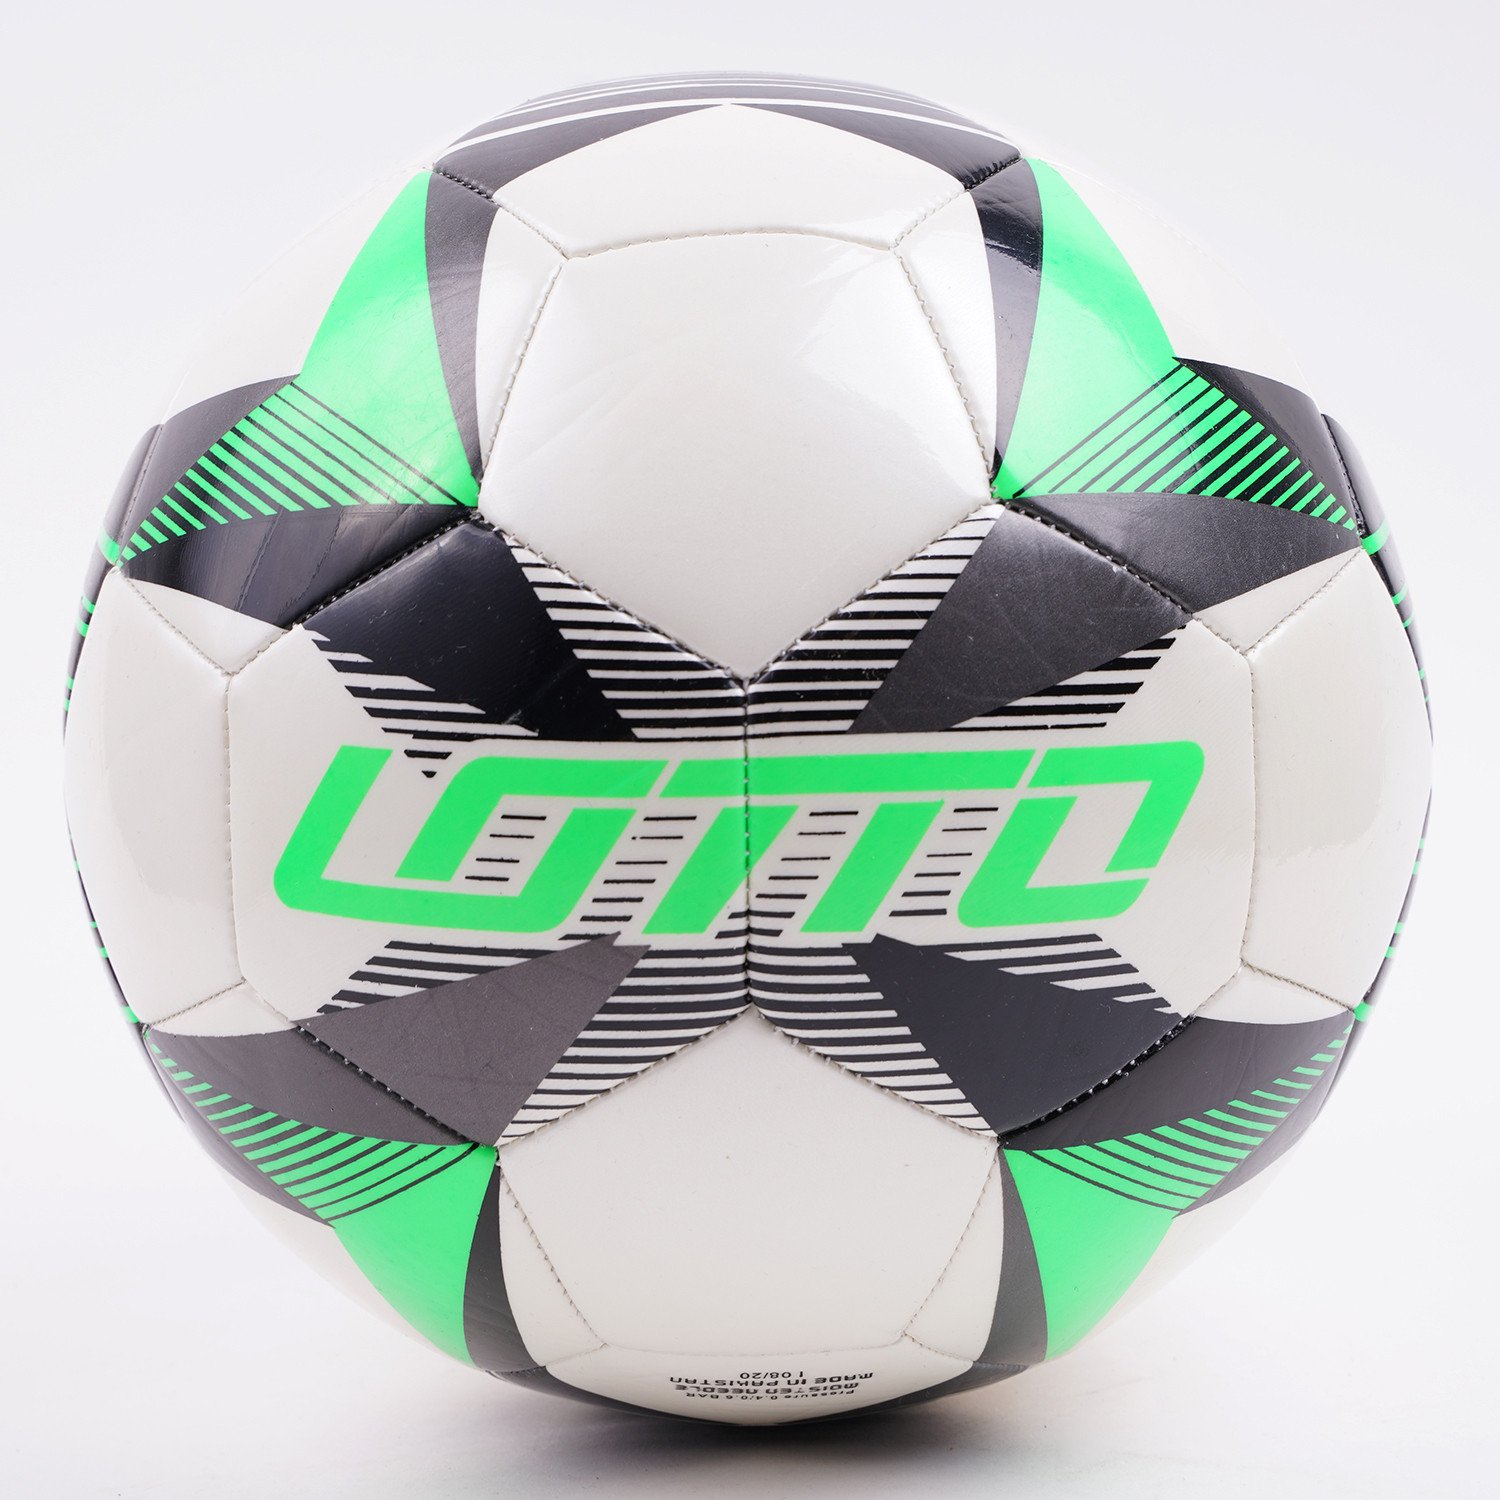 Lotto Football 500 Evo 5 Μπάλα Για Ποδόσφαιρο (9000072148_51259)